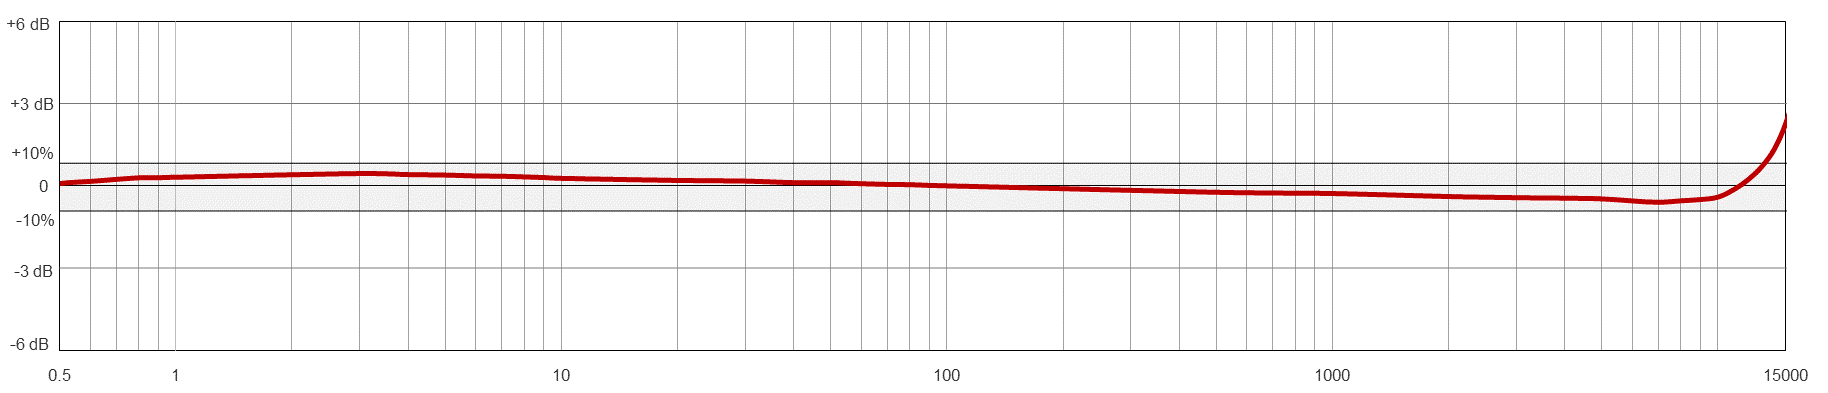 AC915-M12A 典型频率响应